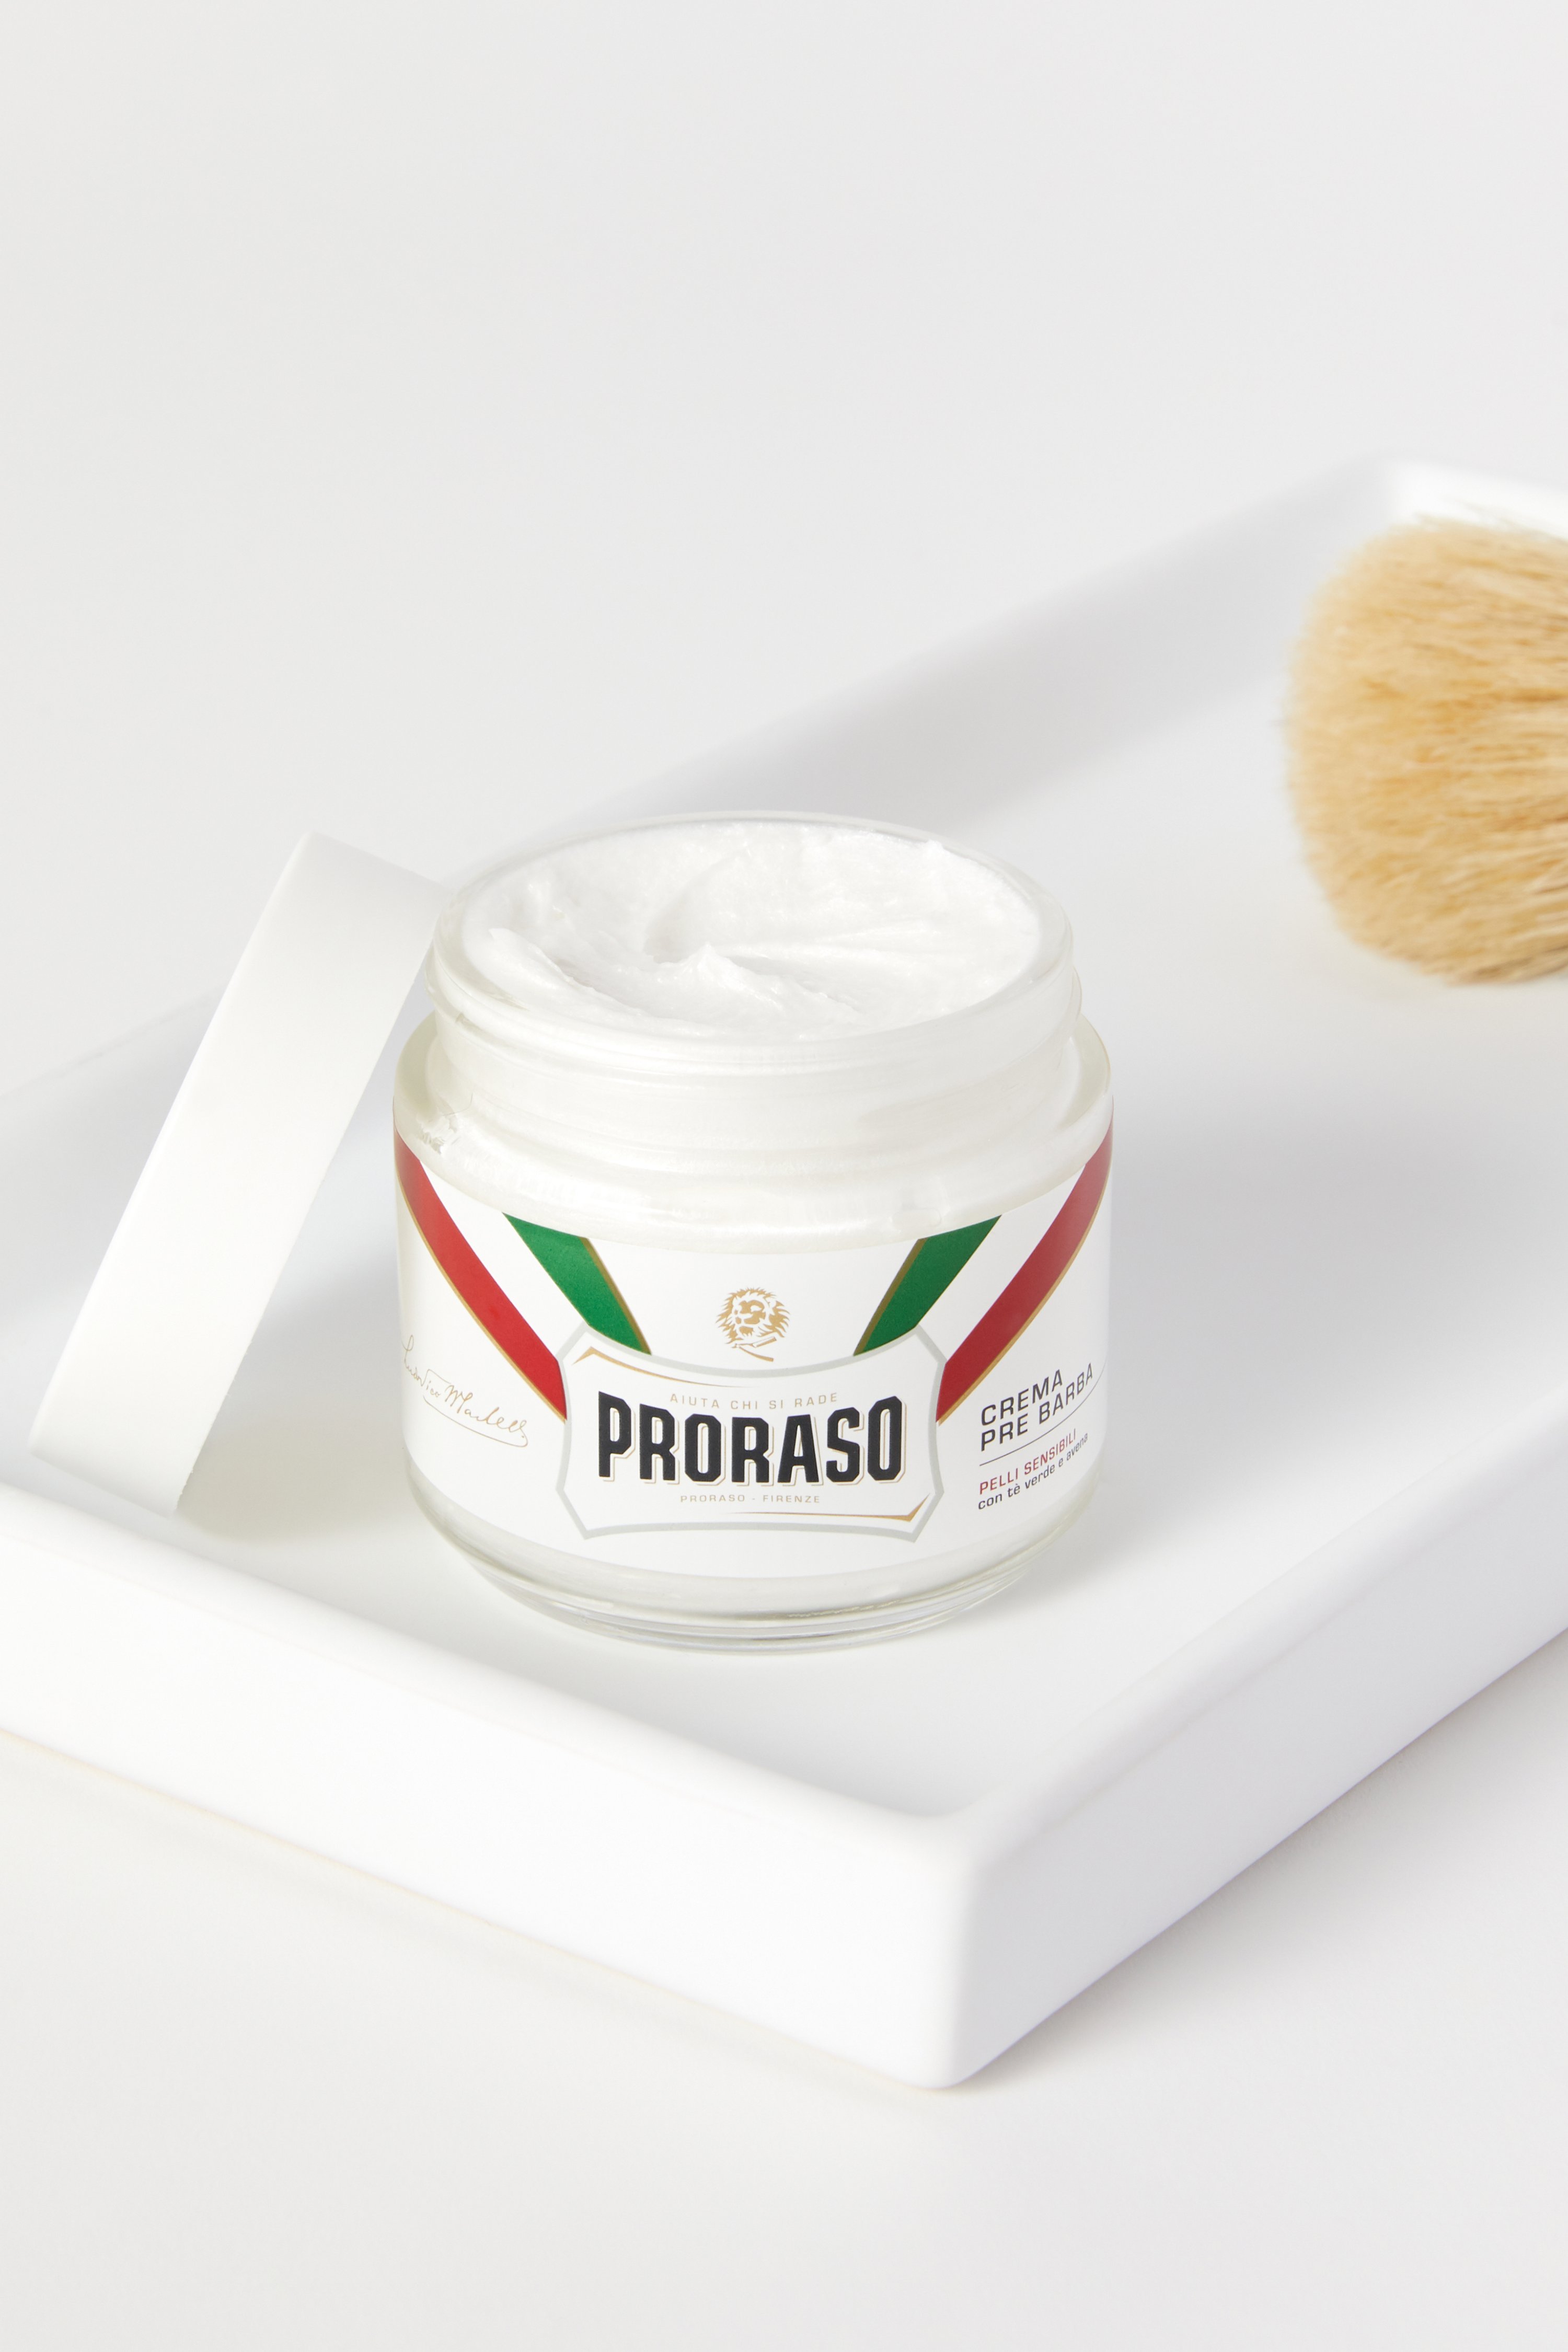 Proraso Pre-shave Cream Sensitive